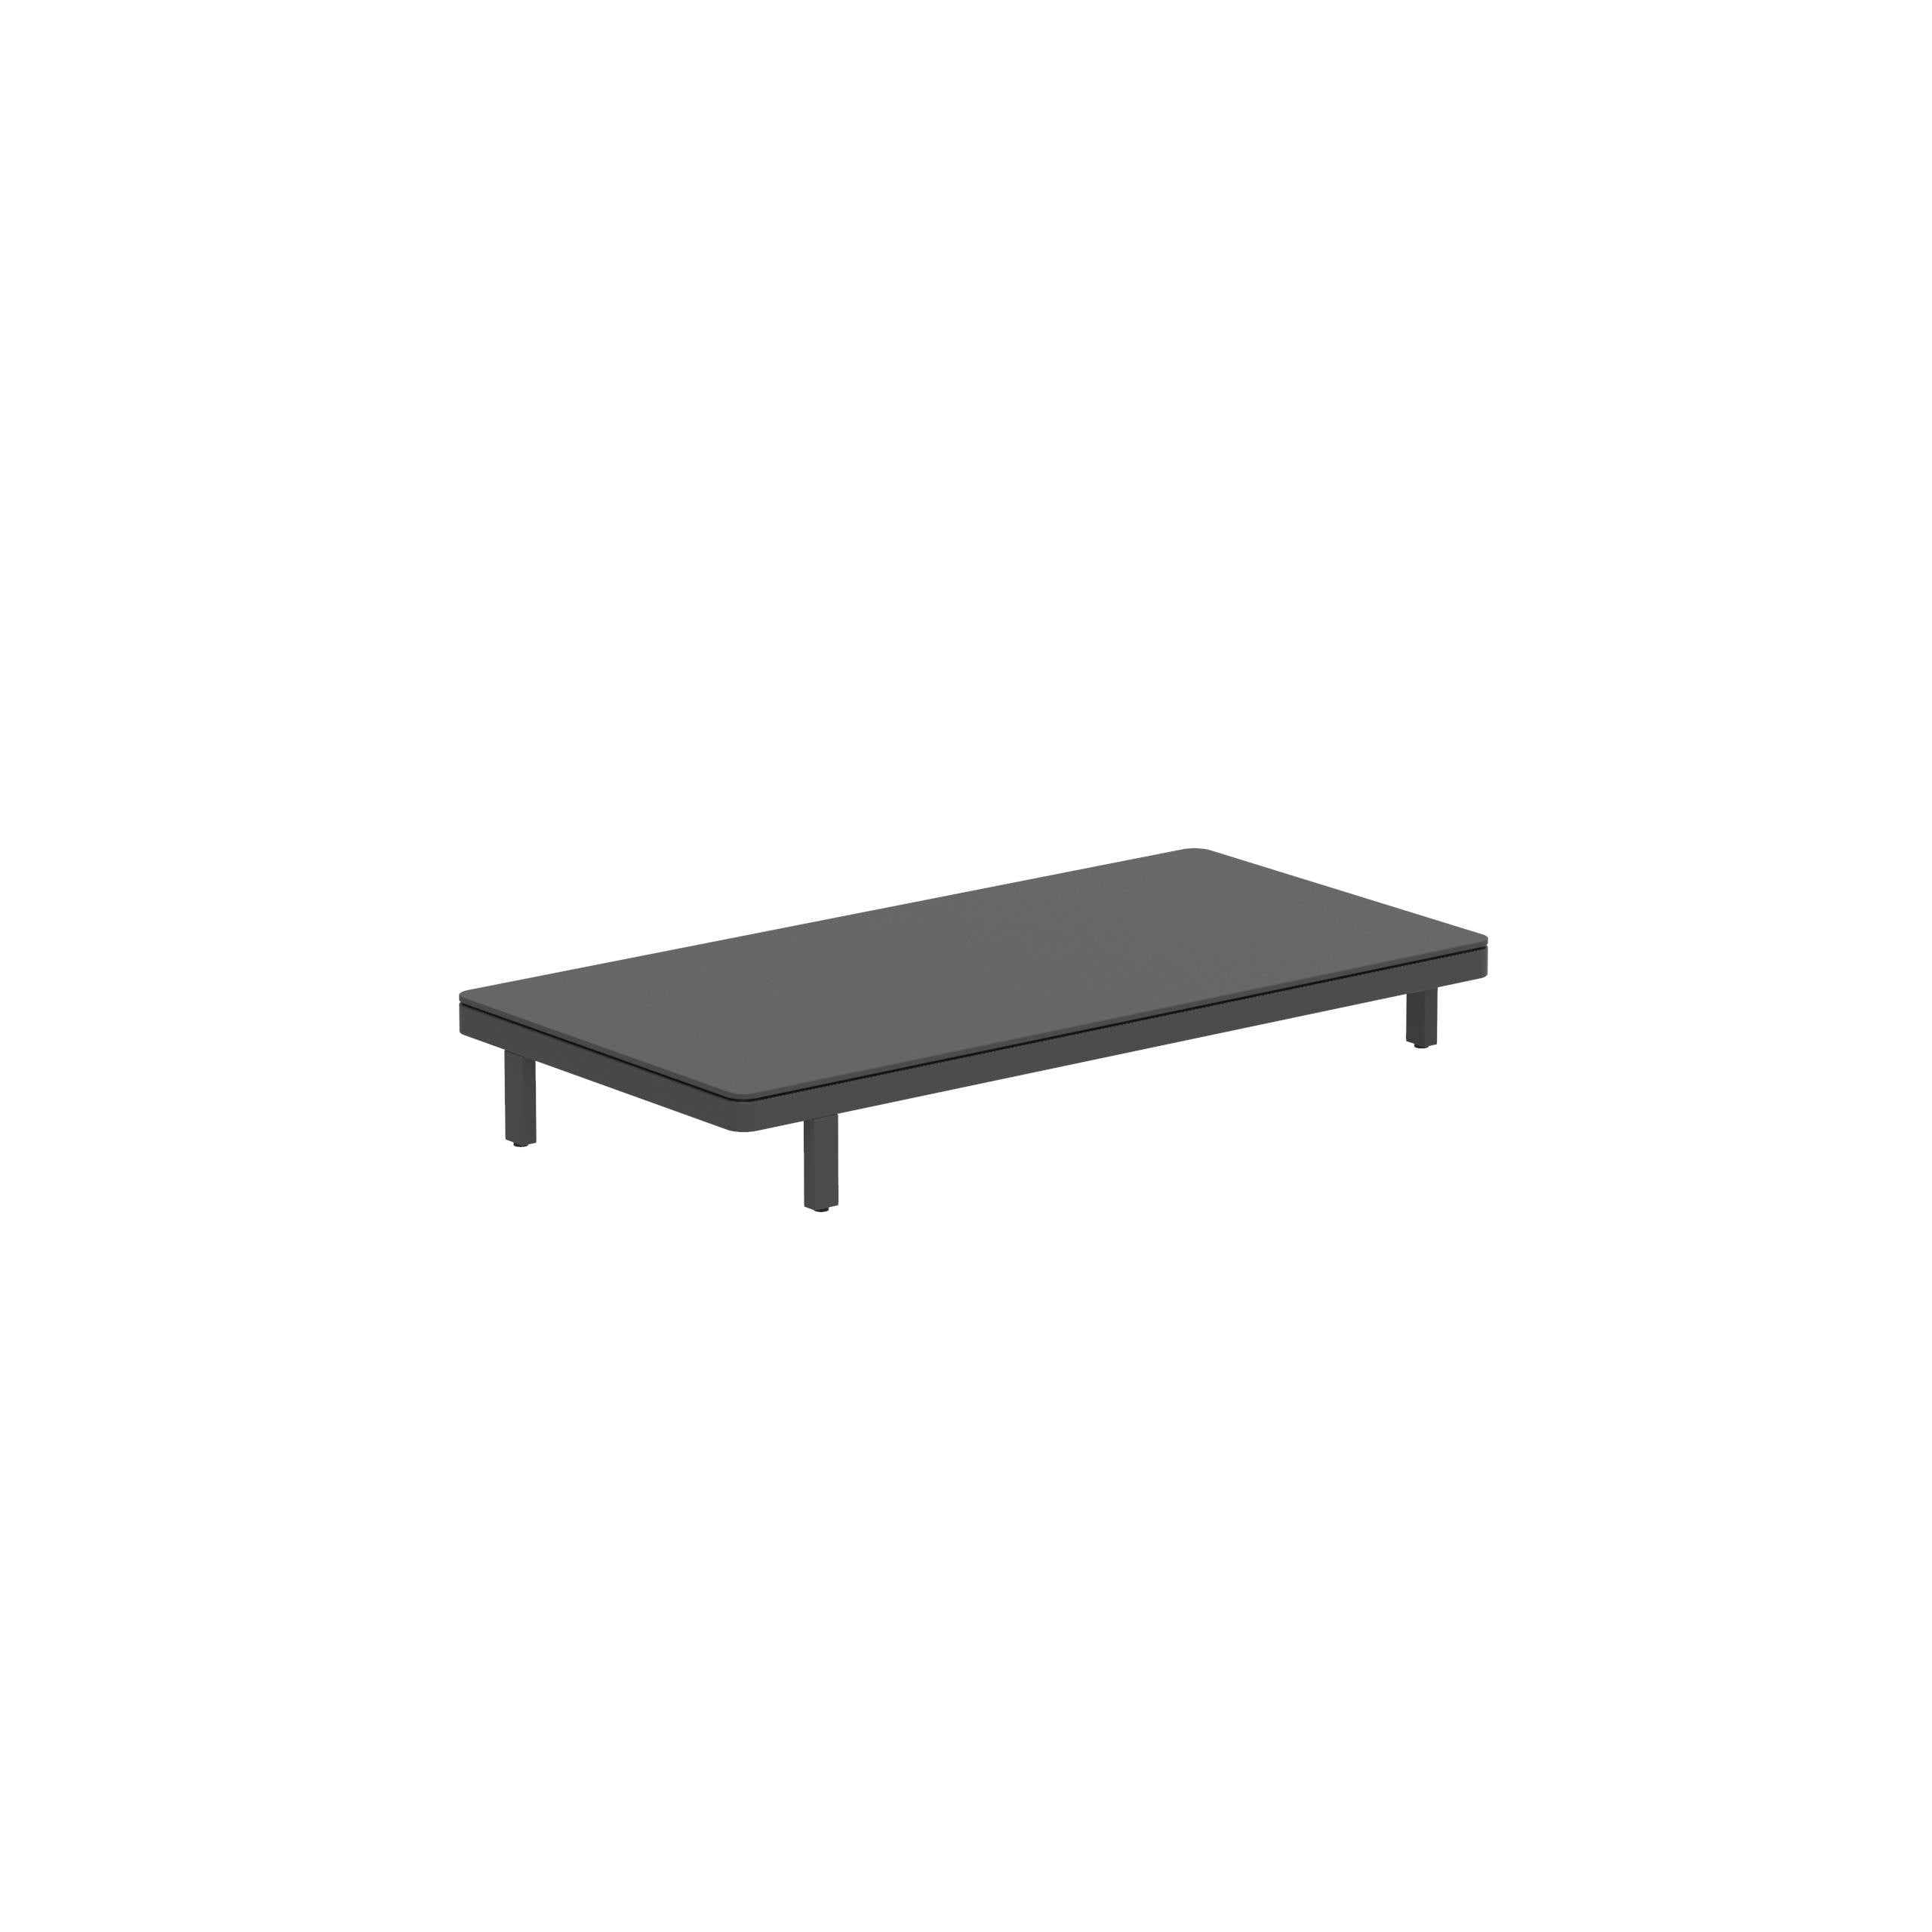 Alura Lounge 160 Ltl Table 160x80x23cm Black Tabletop Ceramic Black